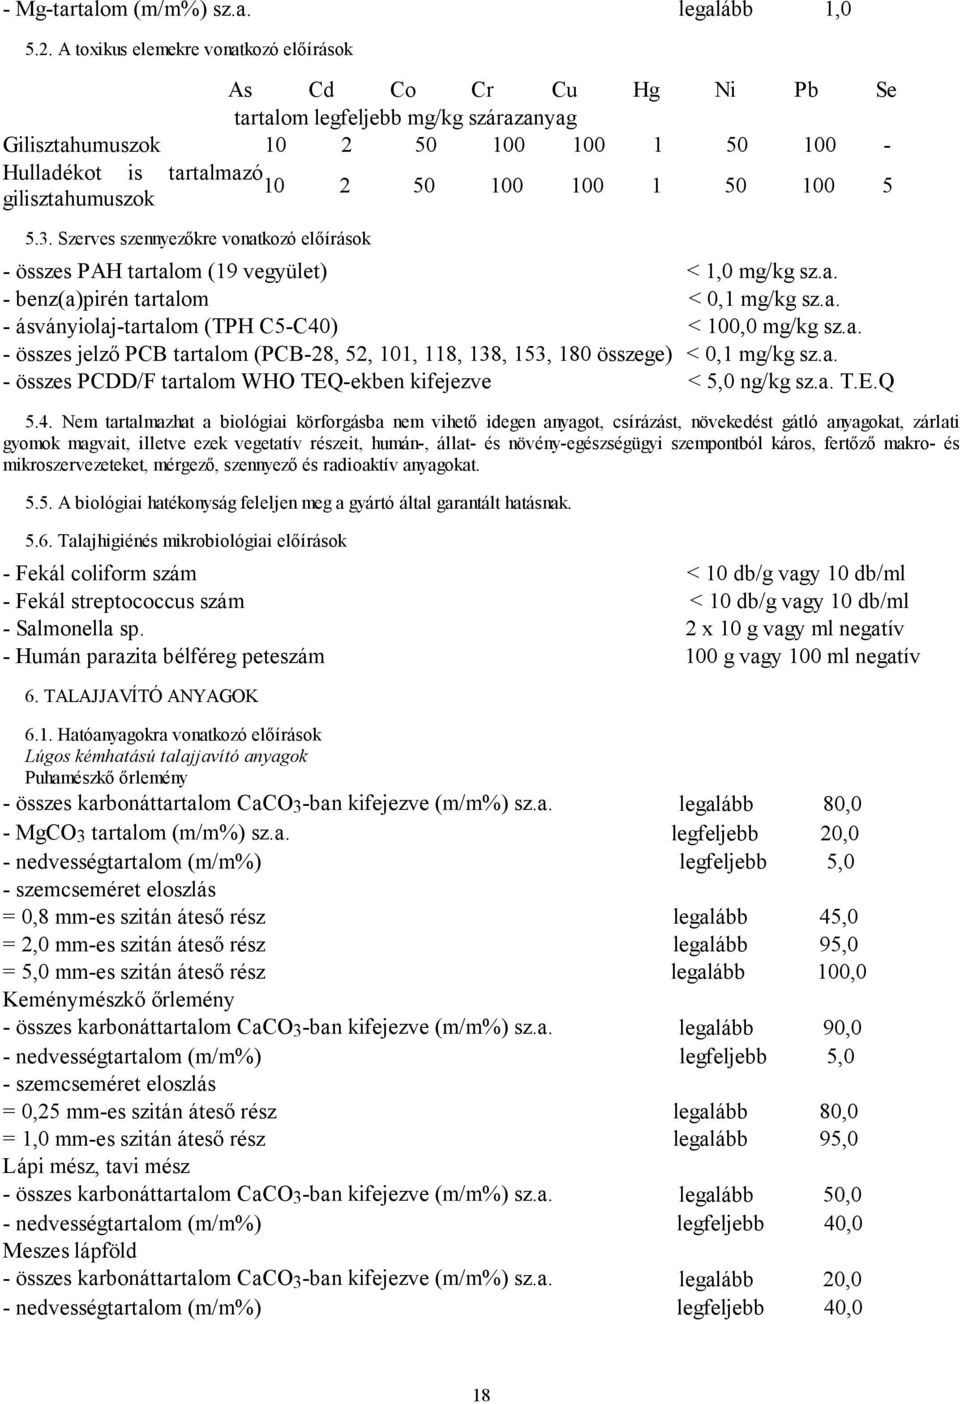 gilisztahumuszok 5.3. Szerves szennyezőkre vonatkozó előírások - összes PAH tartalom (19 vegyület) < 1,0 mg/kg sz.a. - benz(a)pirén tartalom < 0,1 mg/kg sz.a. - ásványiolaj-tartalom (TPH C5-C40) < 100,0 mg/kg sz.